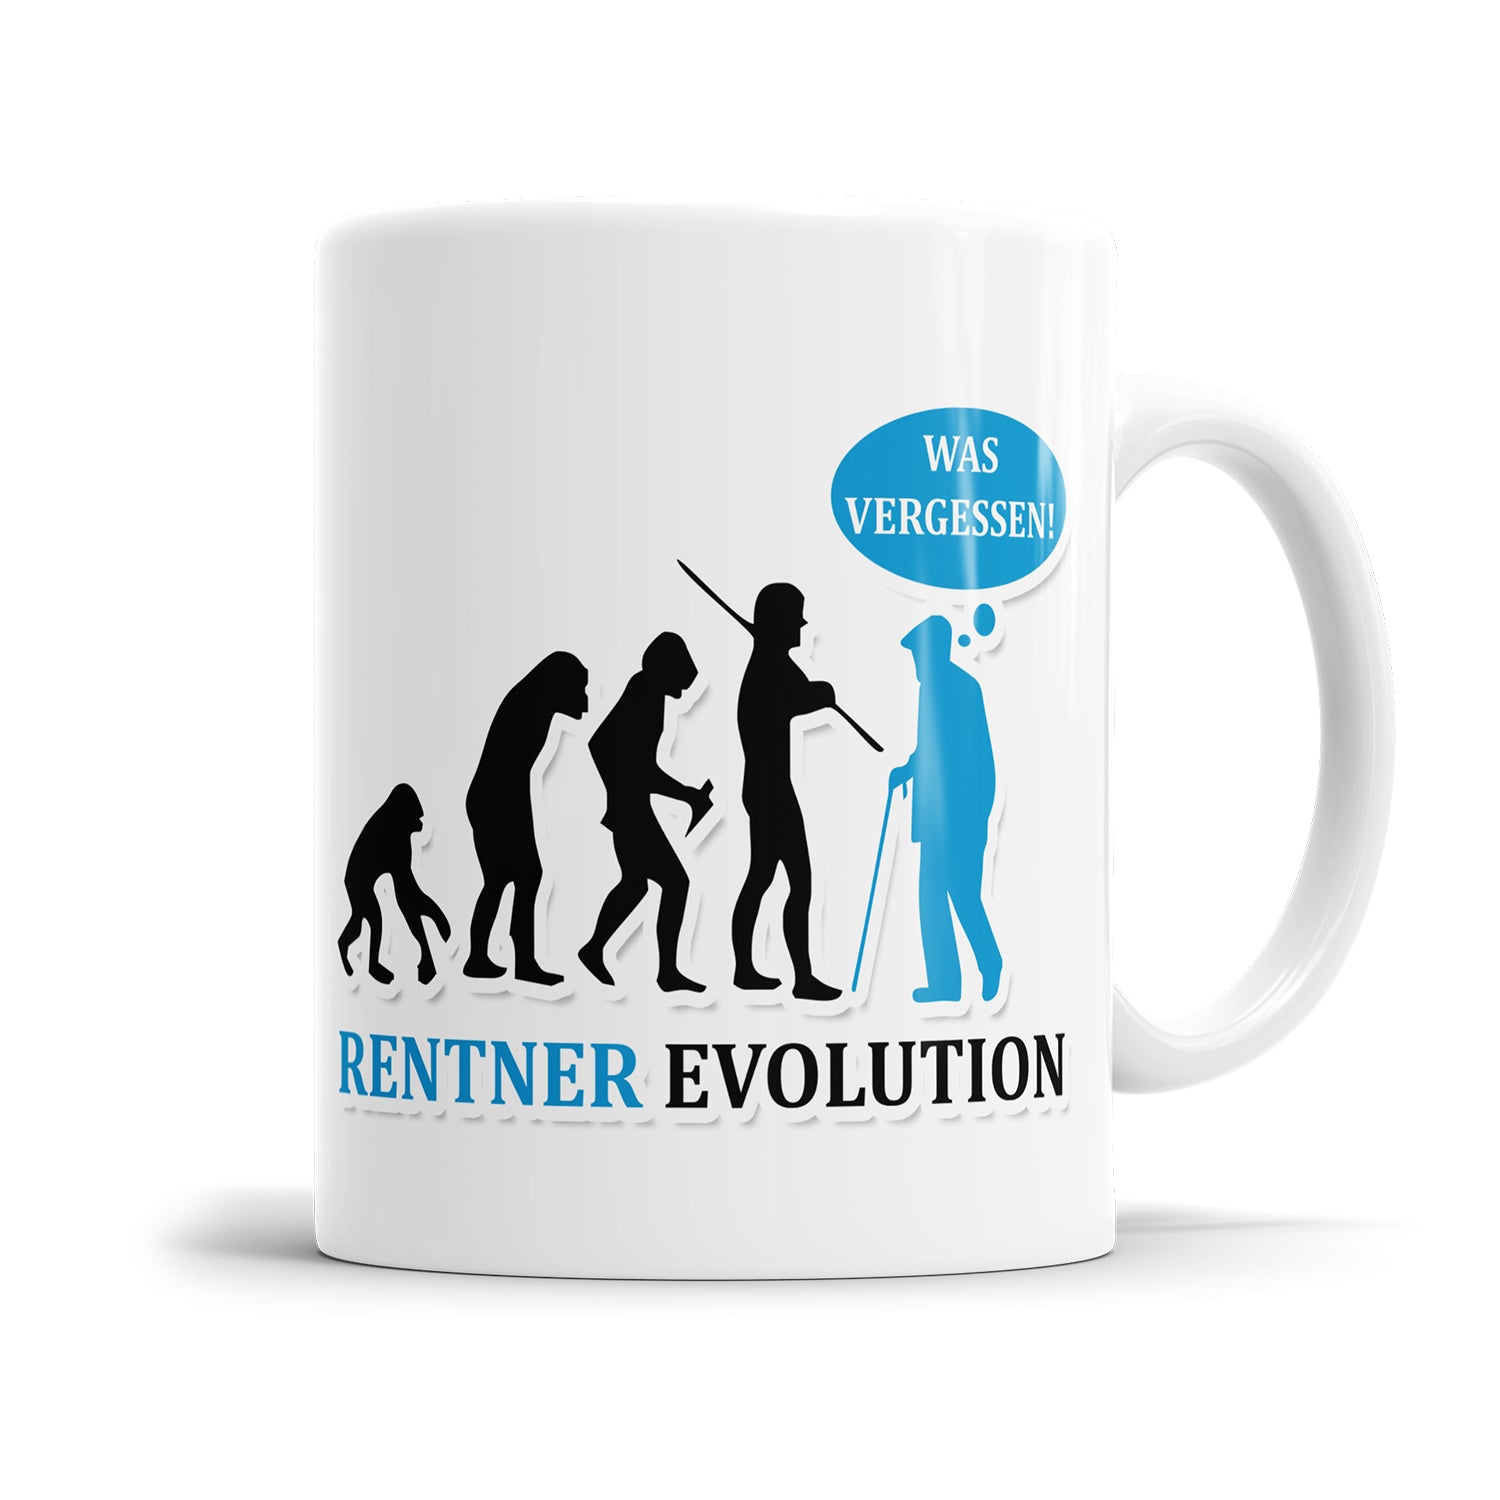 Rentner und Ruhestand Tasse | Geschenk zum Abschied | Fulima | Rentner Evolution vom Affen zum Menschen zum Rentner Was vergessen? Becher